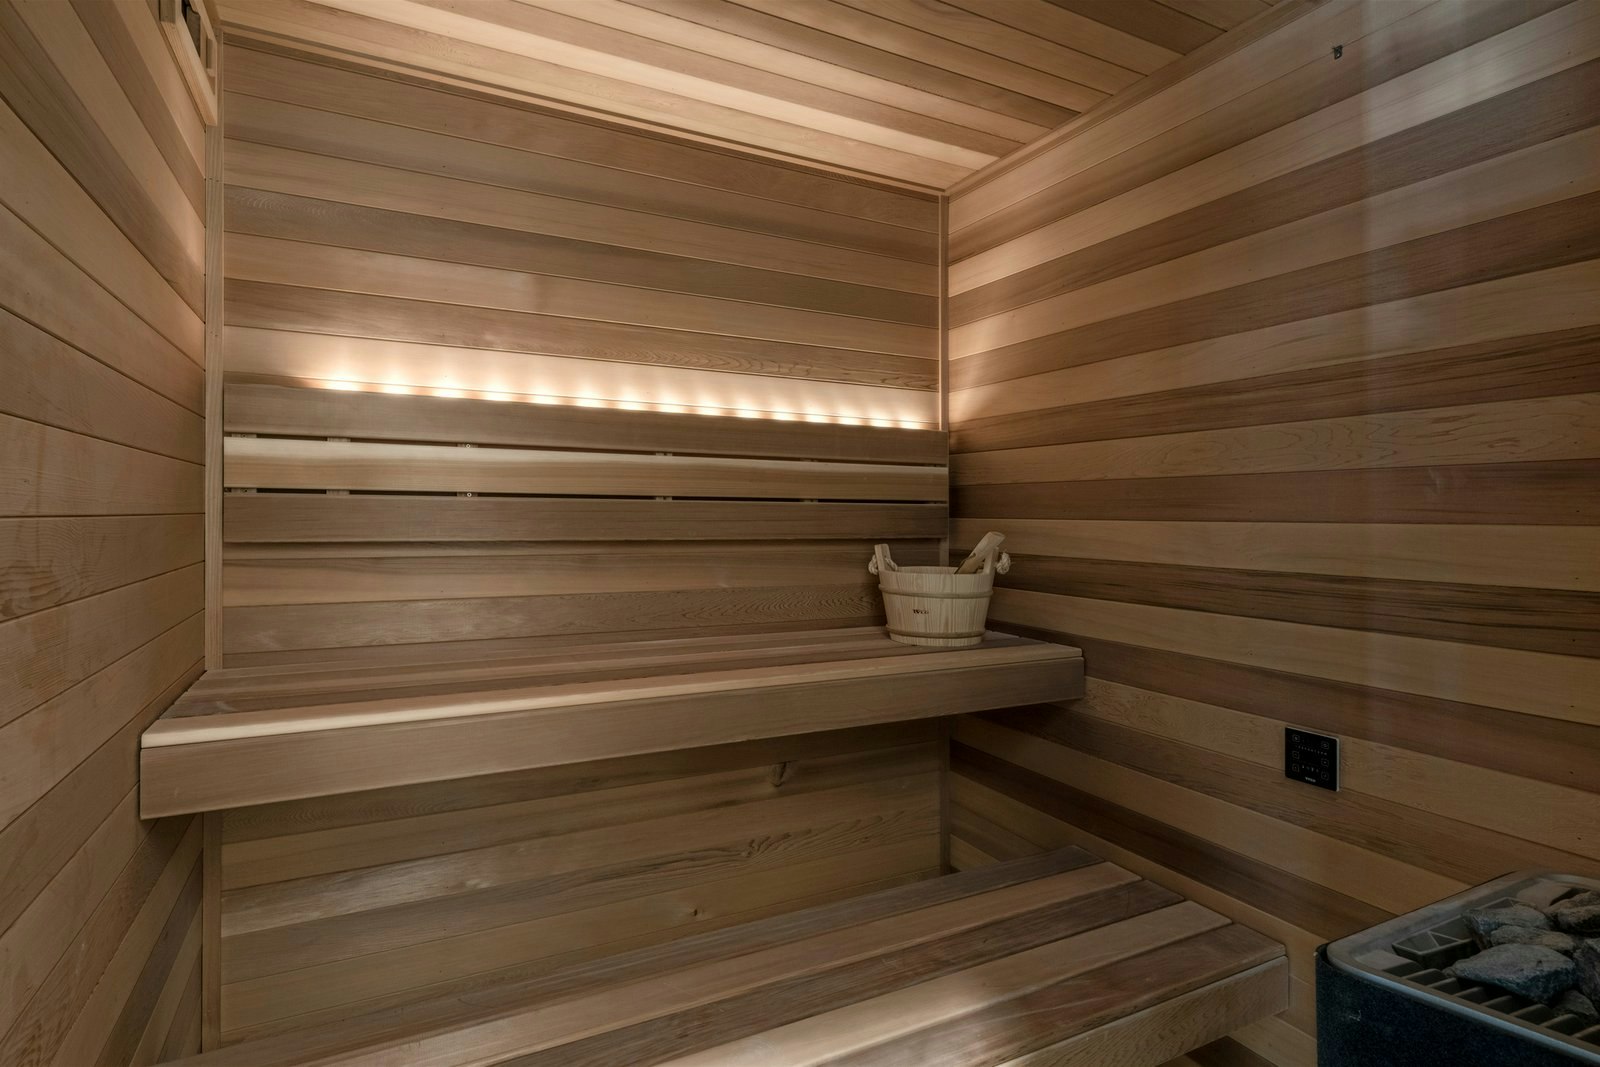 Image of sauna